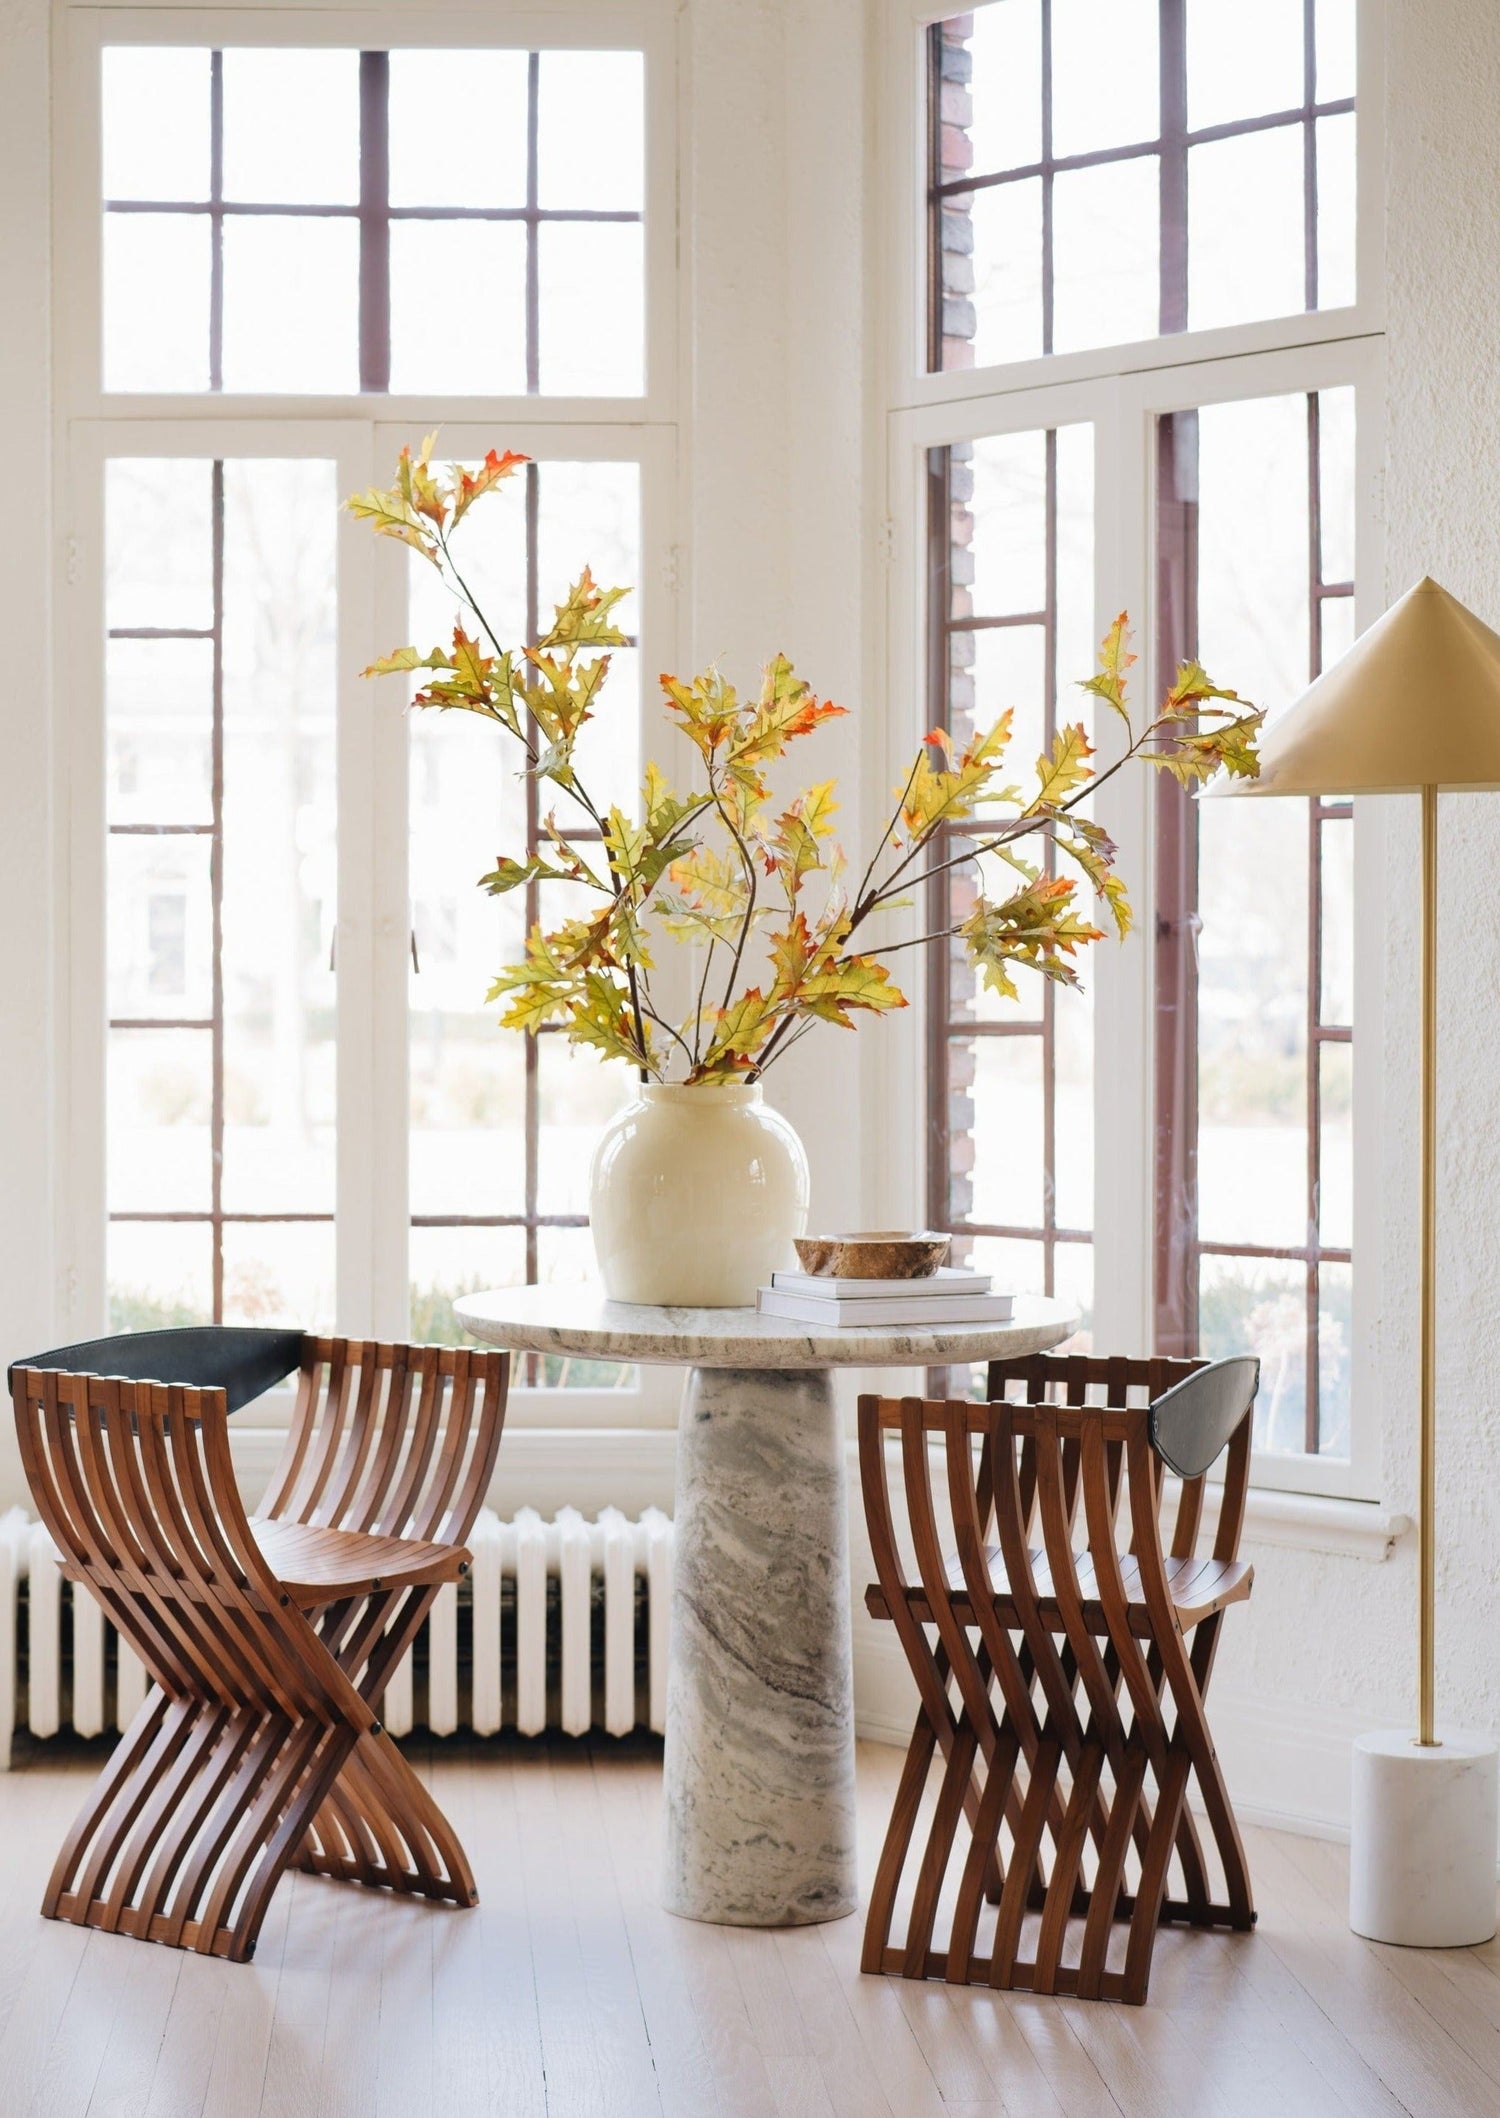 Afloral Artificial Oak Leaf Branch Styled in Vase on Side Table